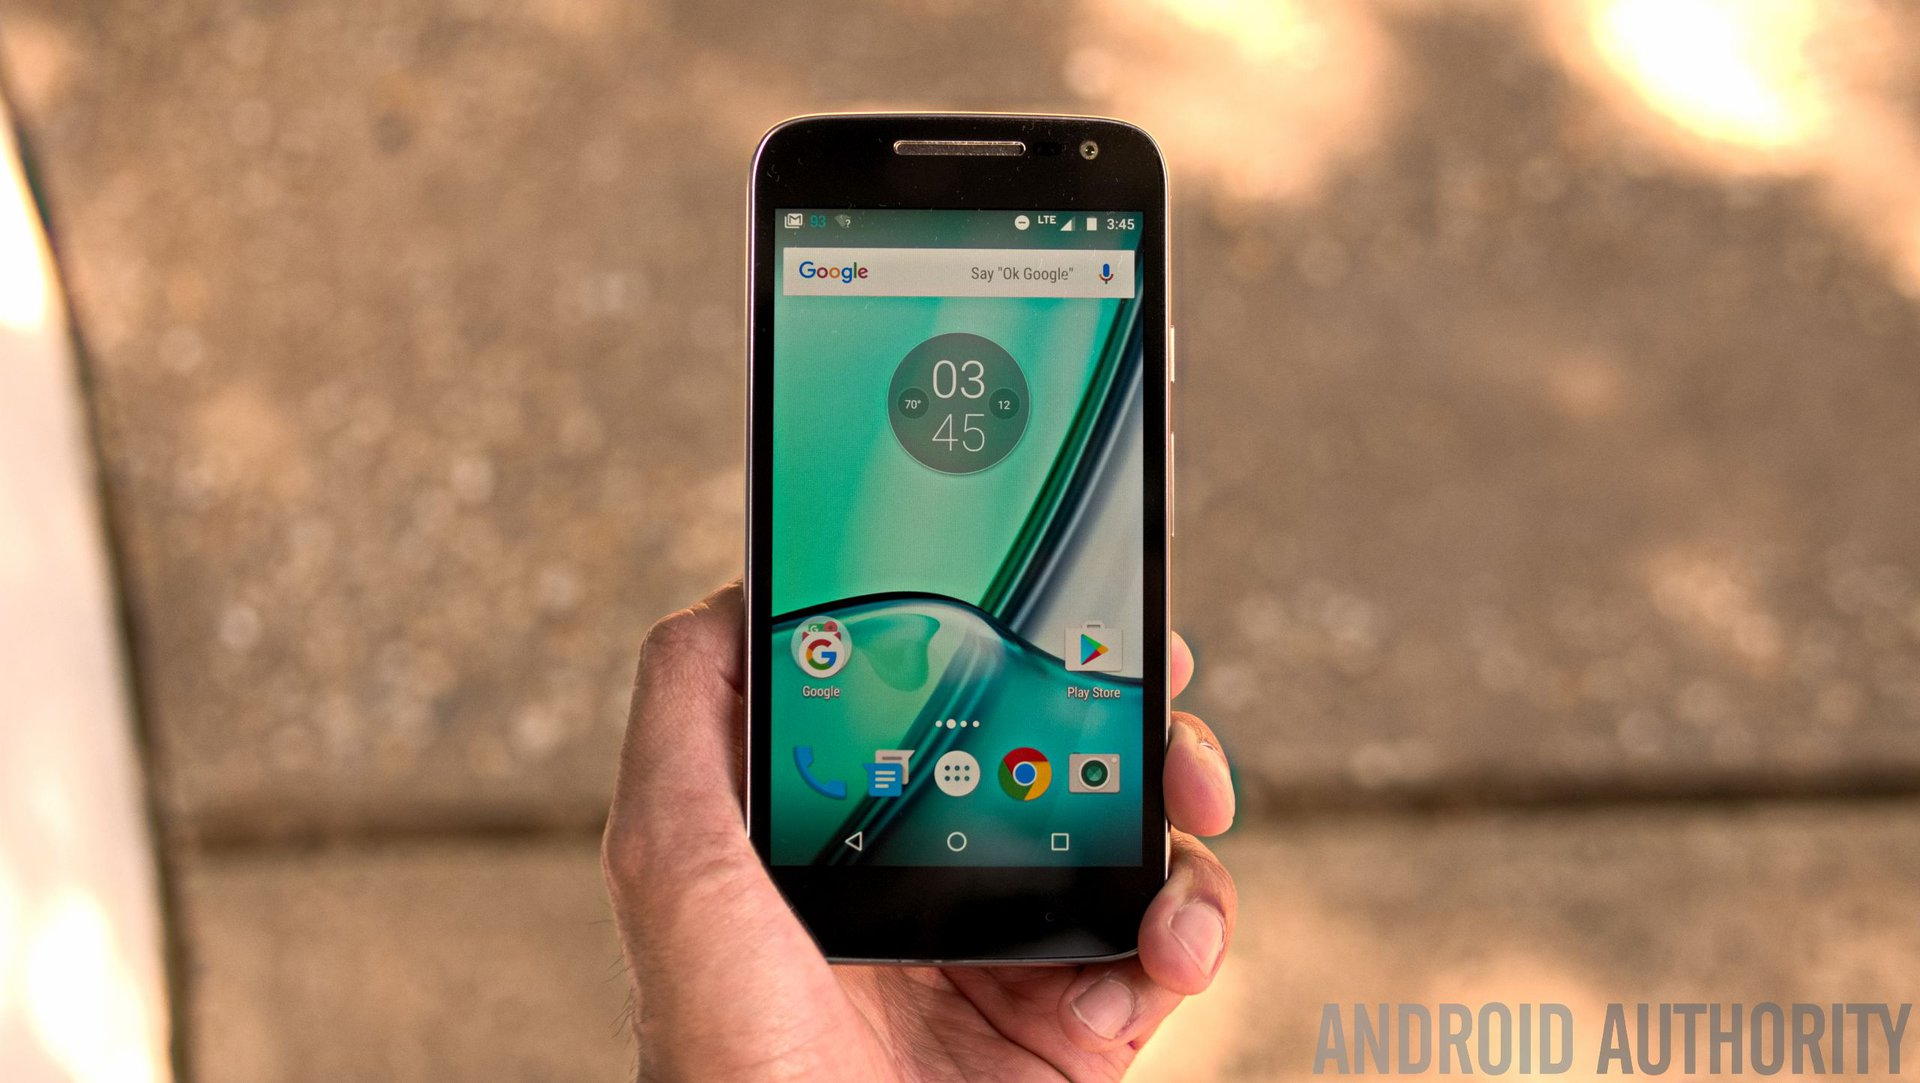 Smartphone Motorola Moto G4 Play 16GB - Novo ou Usado - Outlet do Celular